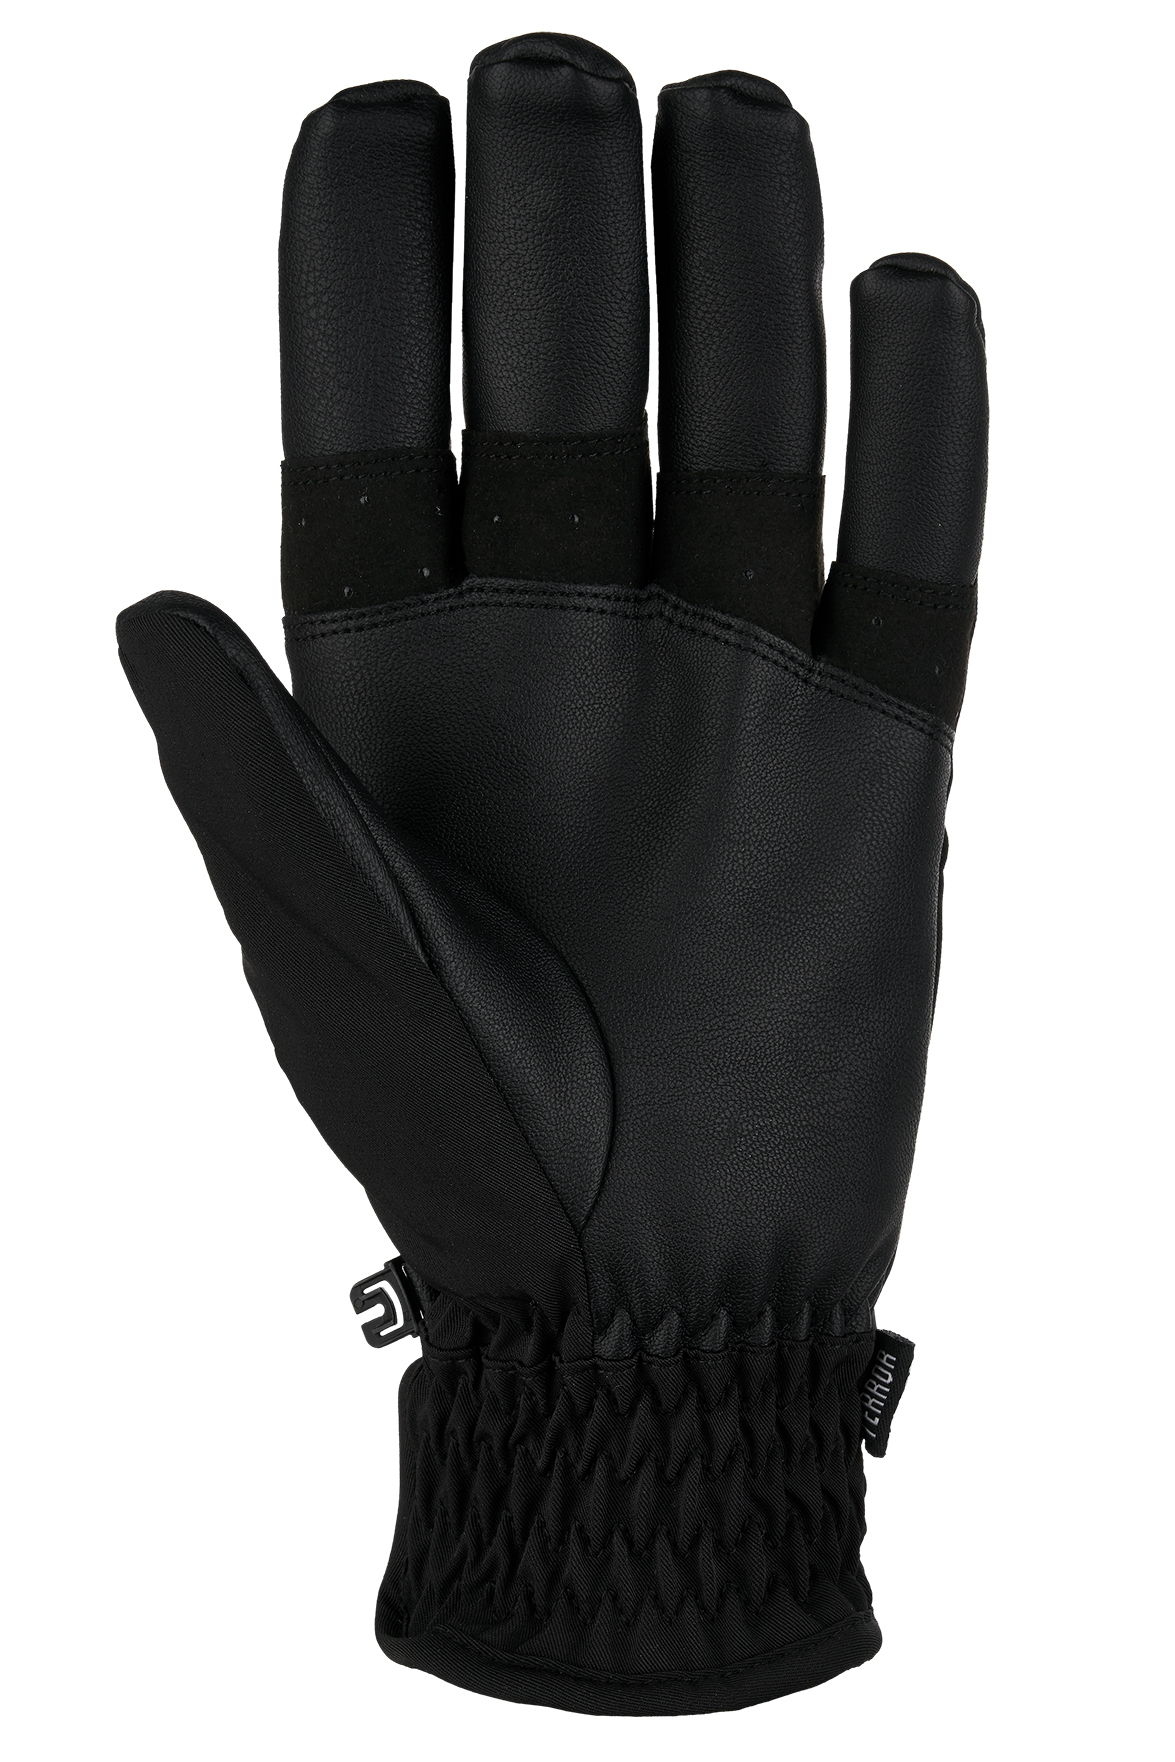 Перчатки TERROR - CREW Gloves купить в Boardshop №1